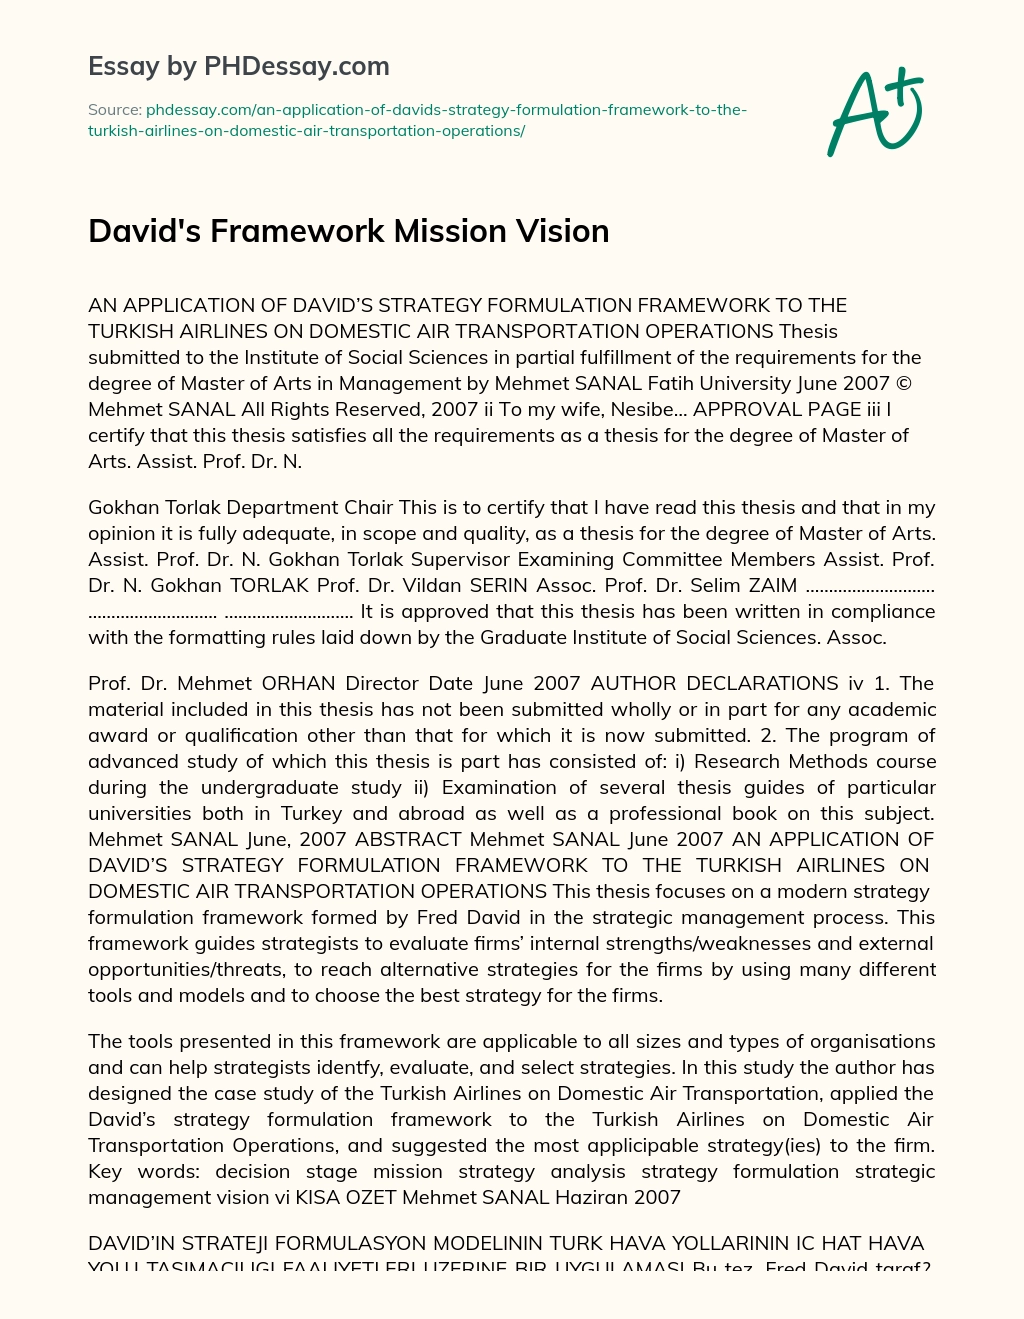 David’s Framework Mission Vision essay